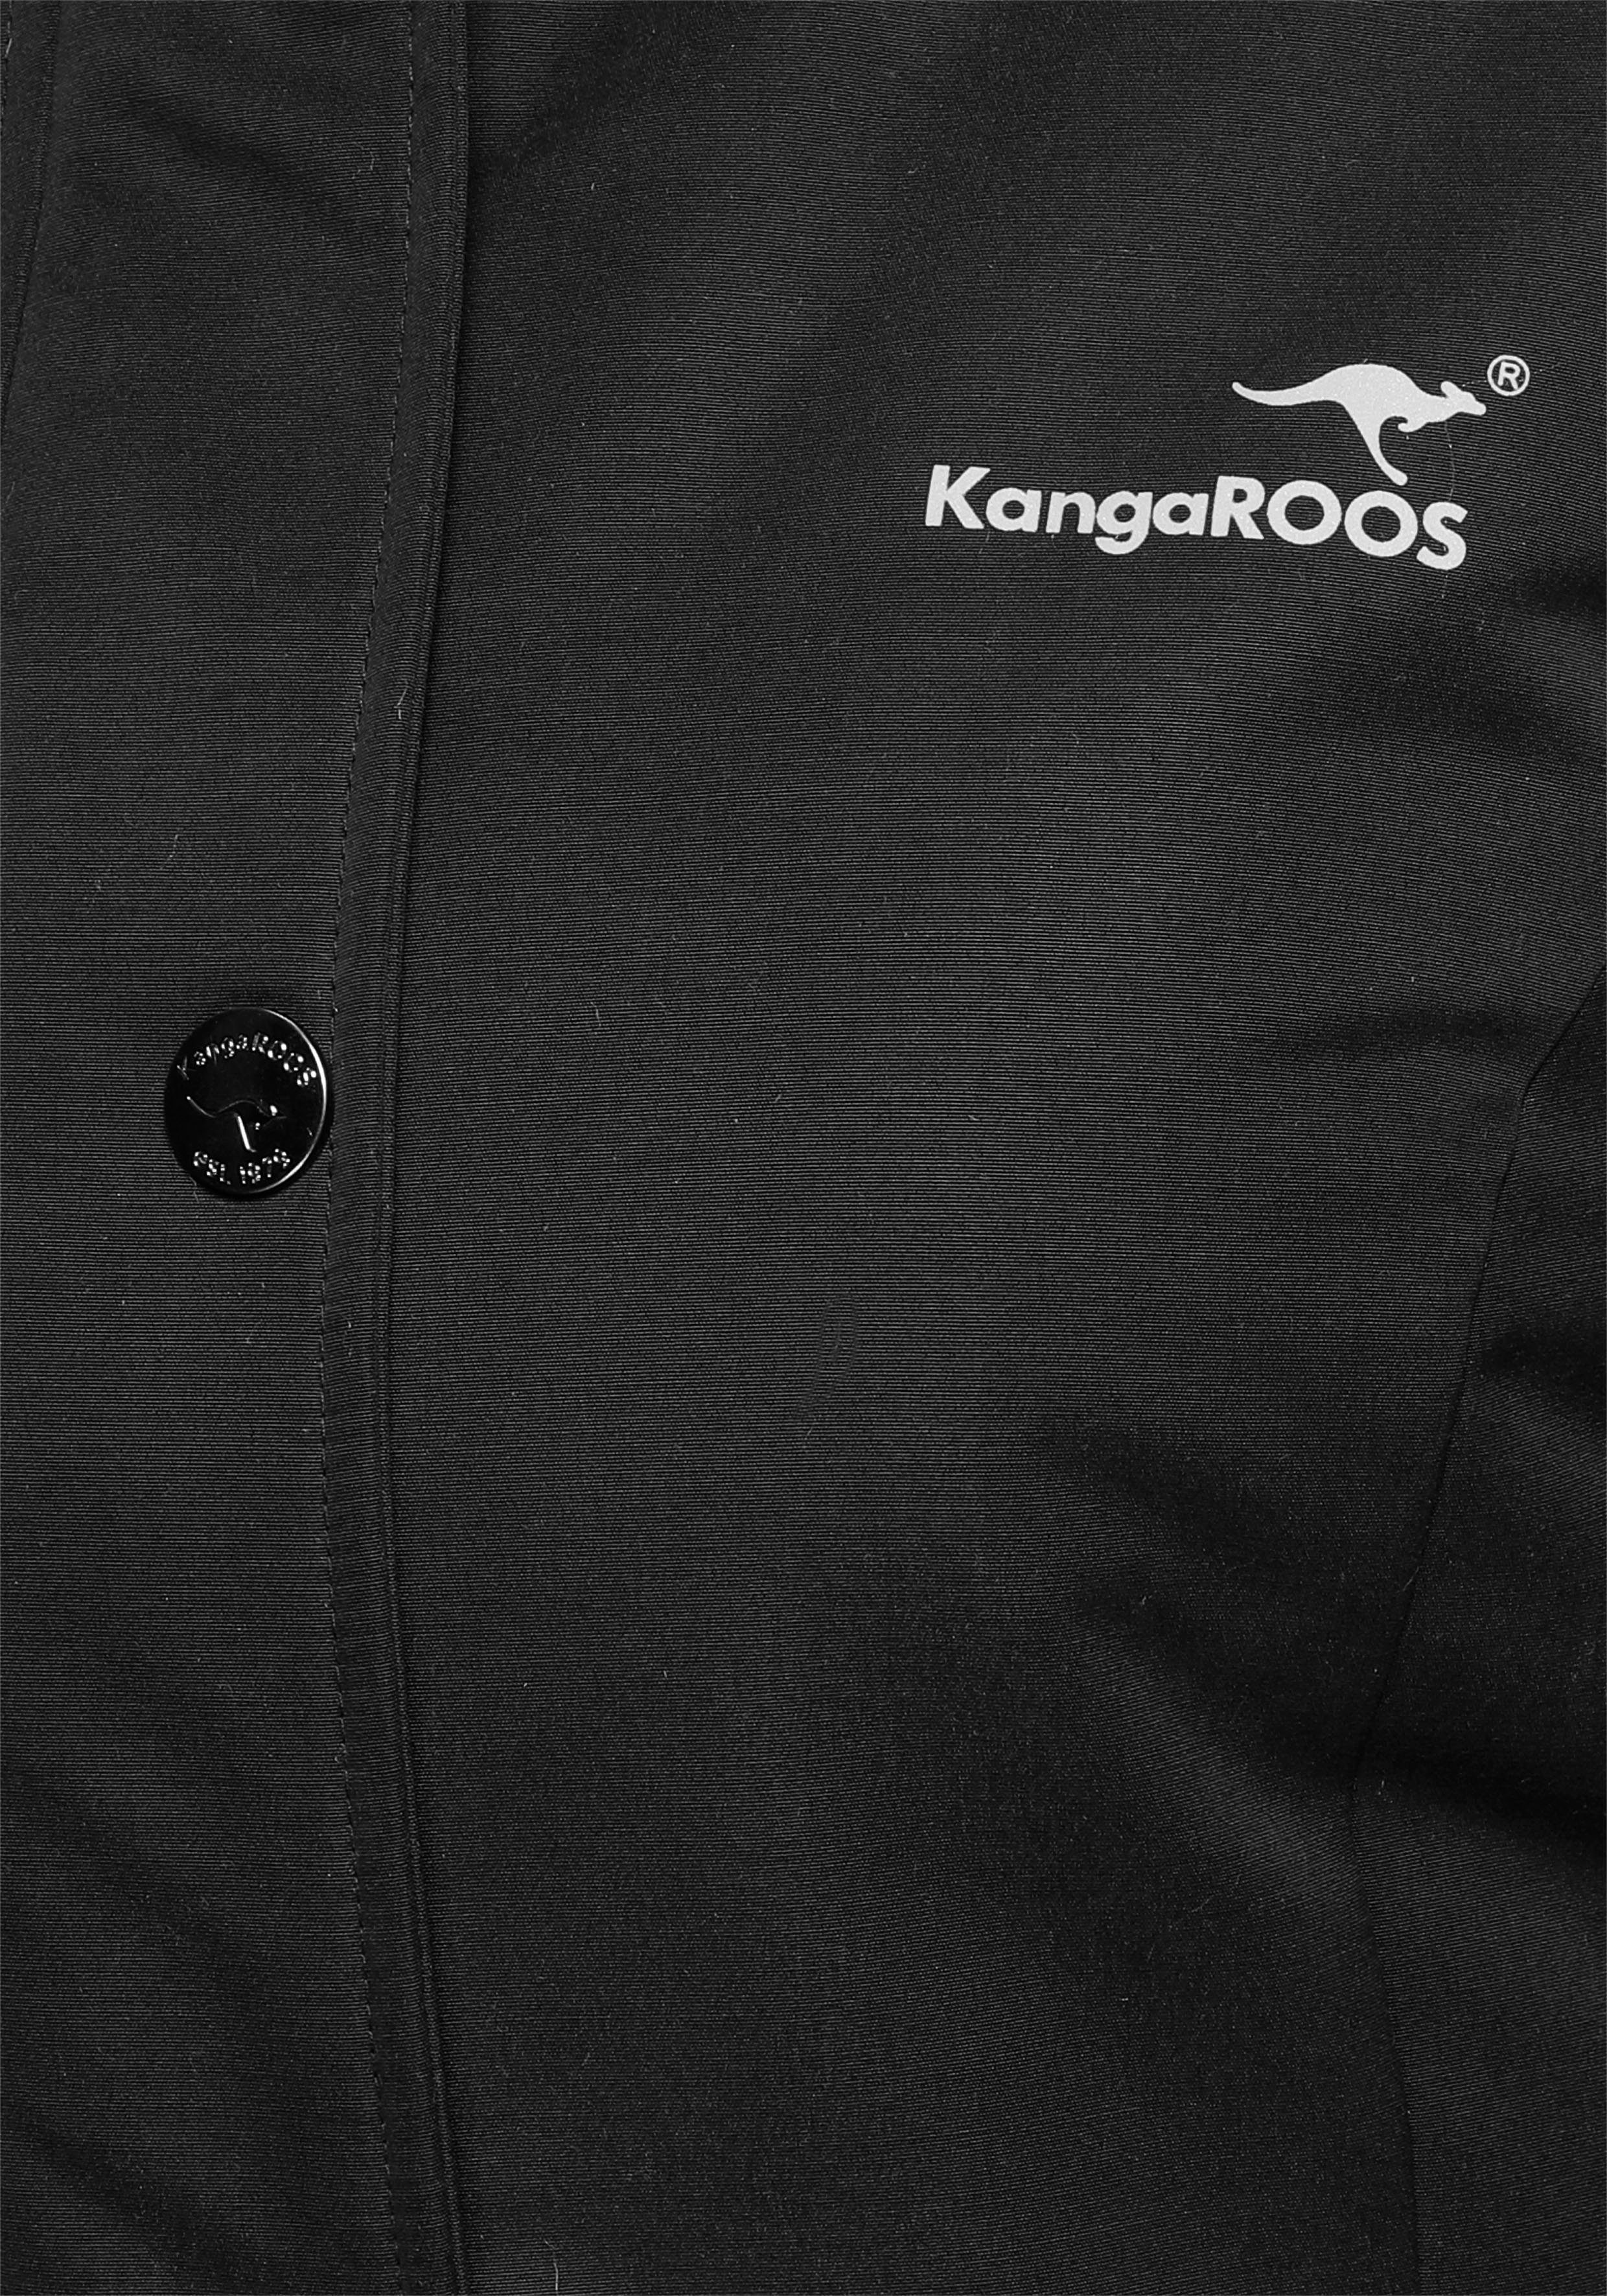 KangaROOS Langjacke aus schwarz vielen mit nachhaltigem Material) Taschen (Langjacke 2-Wege-Reißverschluss und